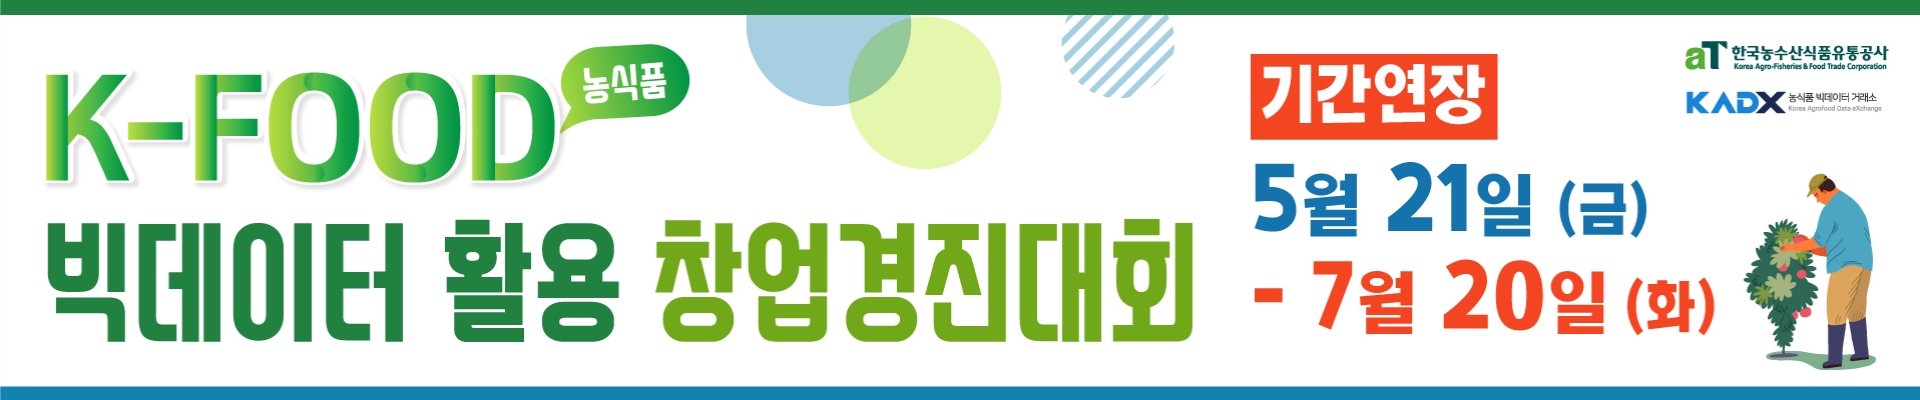 [모집연장] aT 한국농수산식품유통공사 - K-FOOD(농식품) 빅데이터 활용 창업 경진대회 참가자 모집